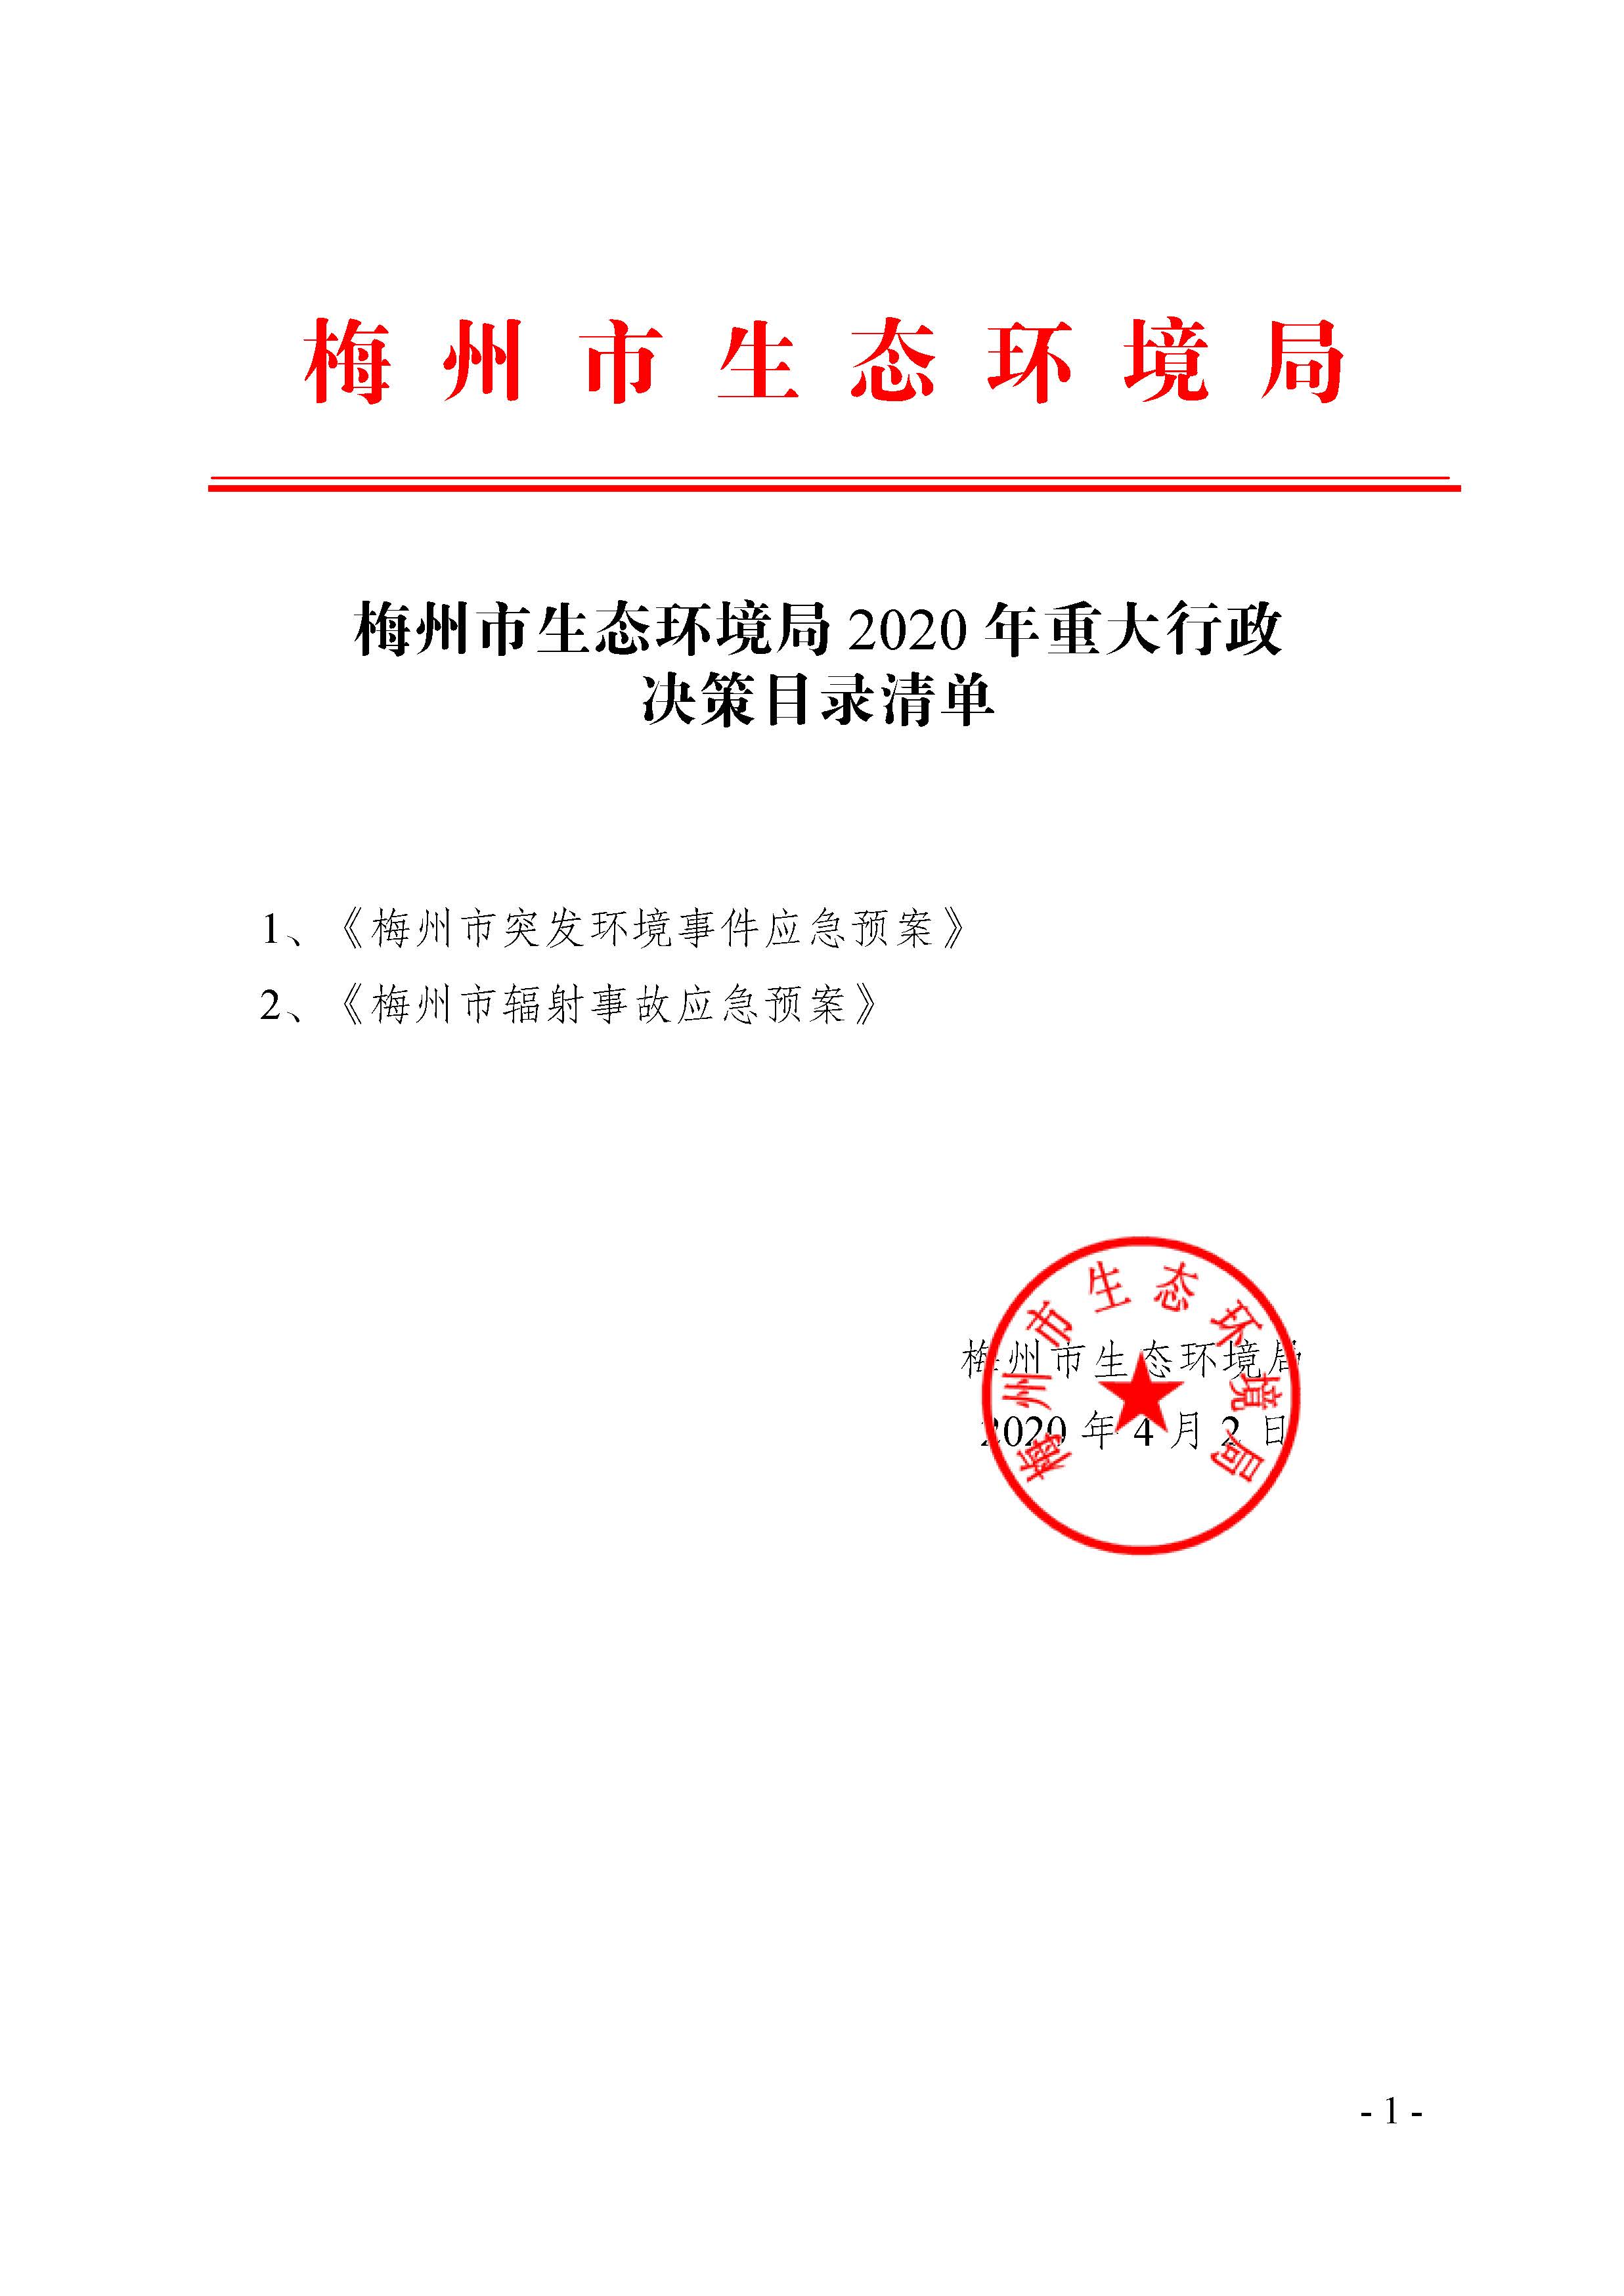 2020.4.3 梅州市生态环境局2020年重大行政决策目录清单_signed.jpg